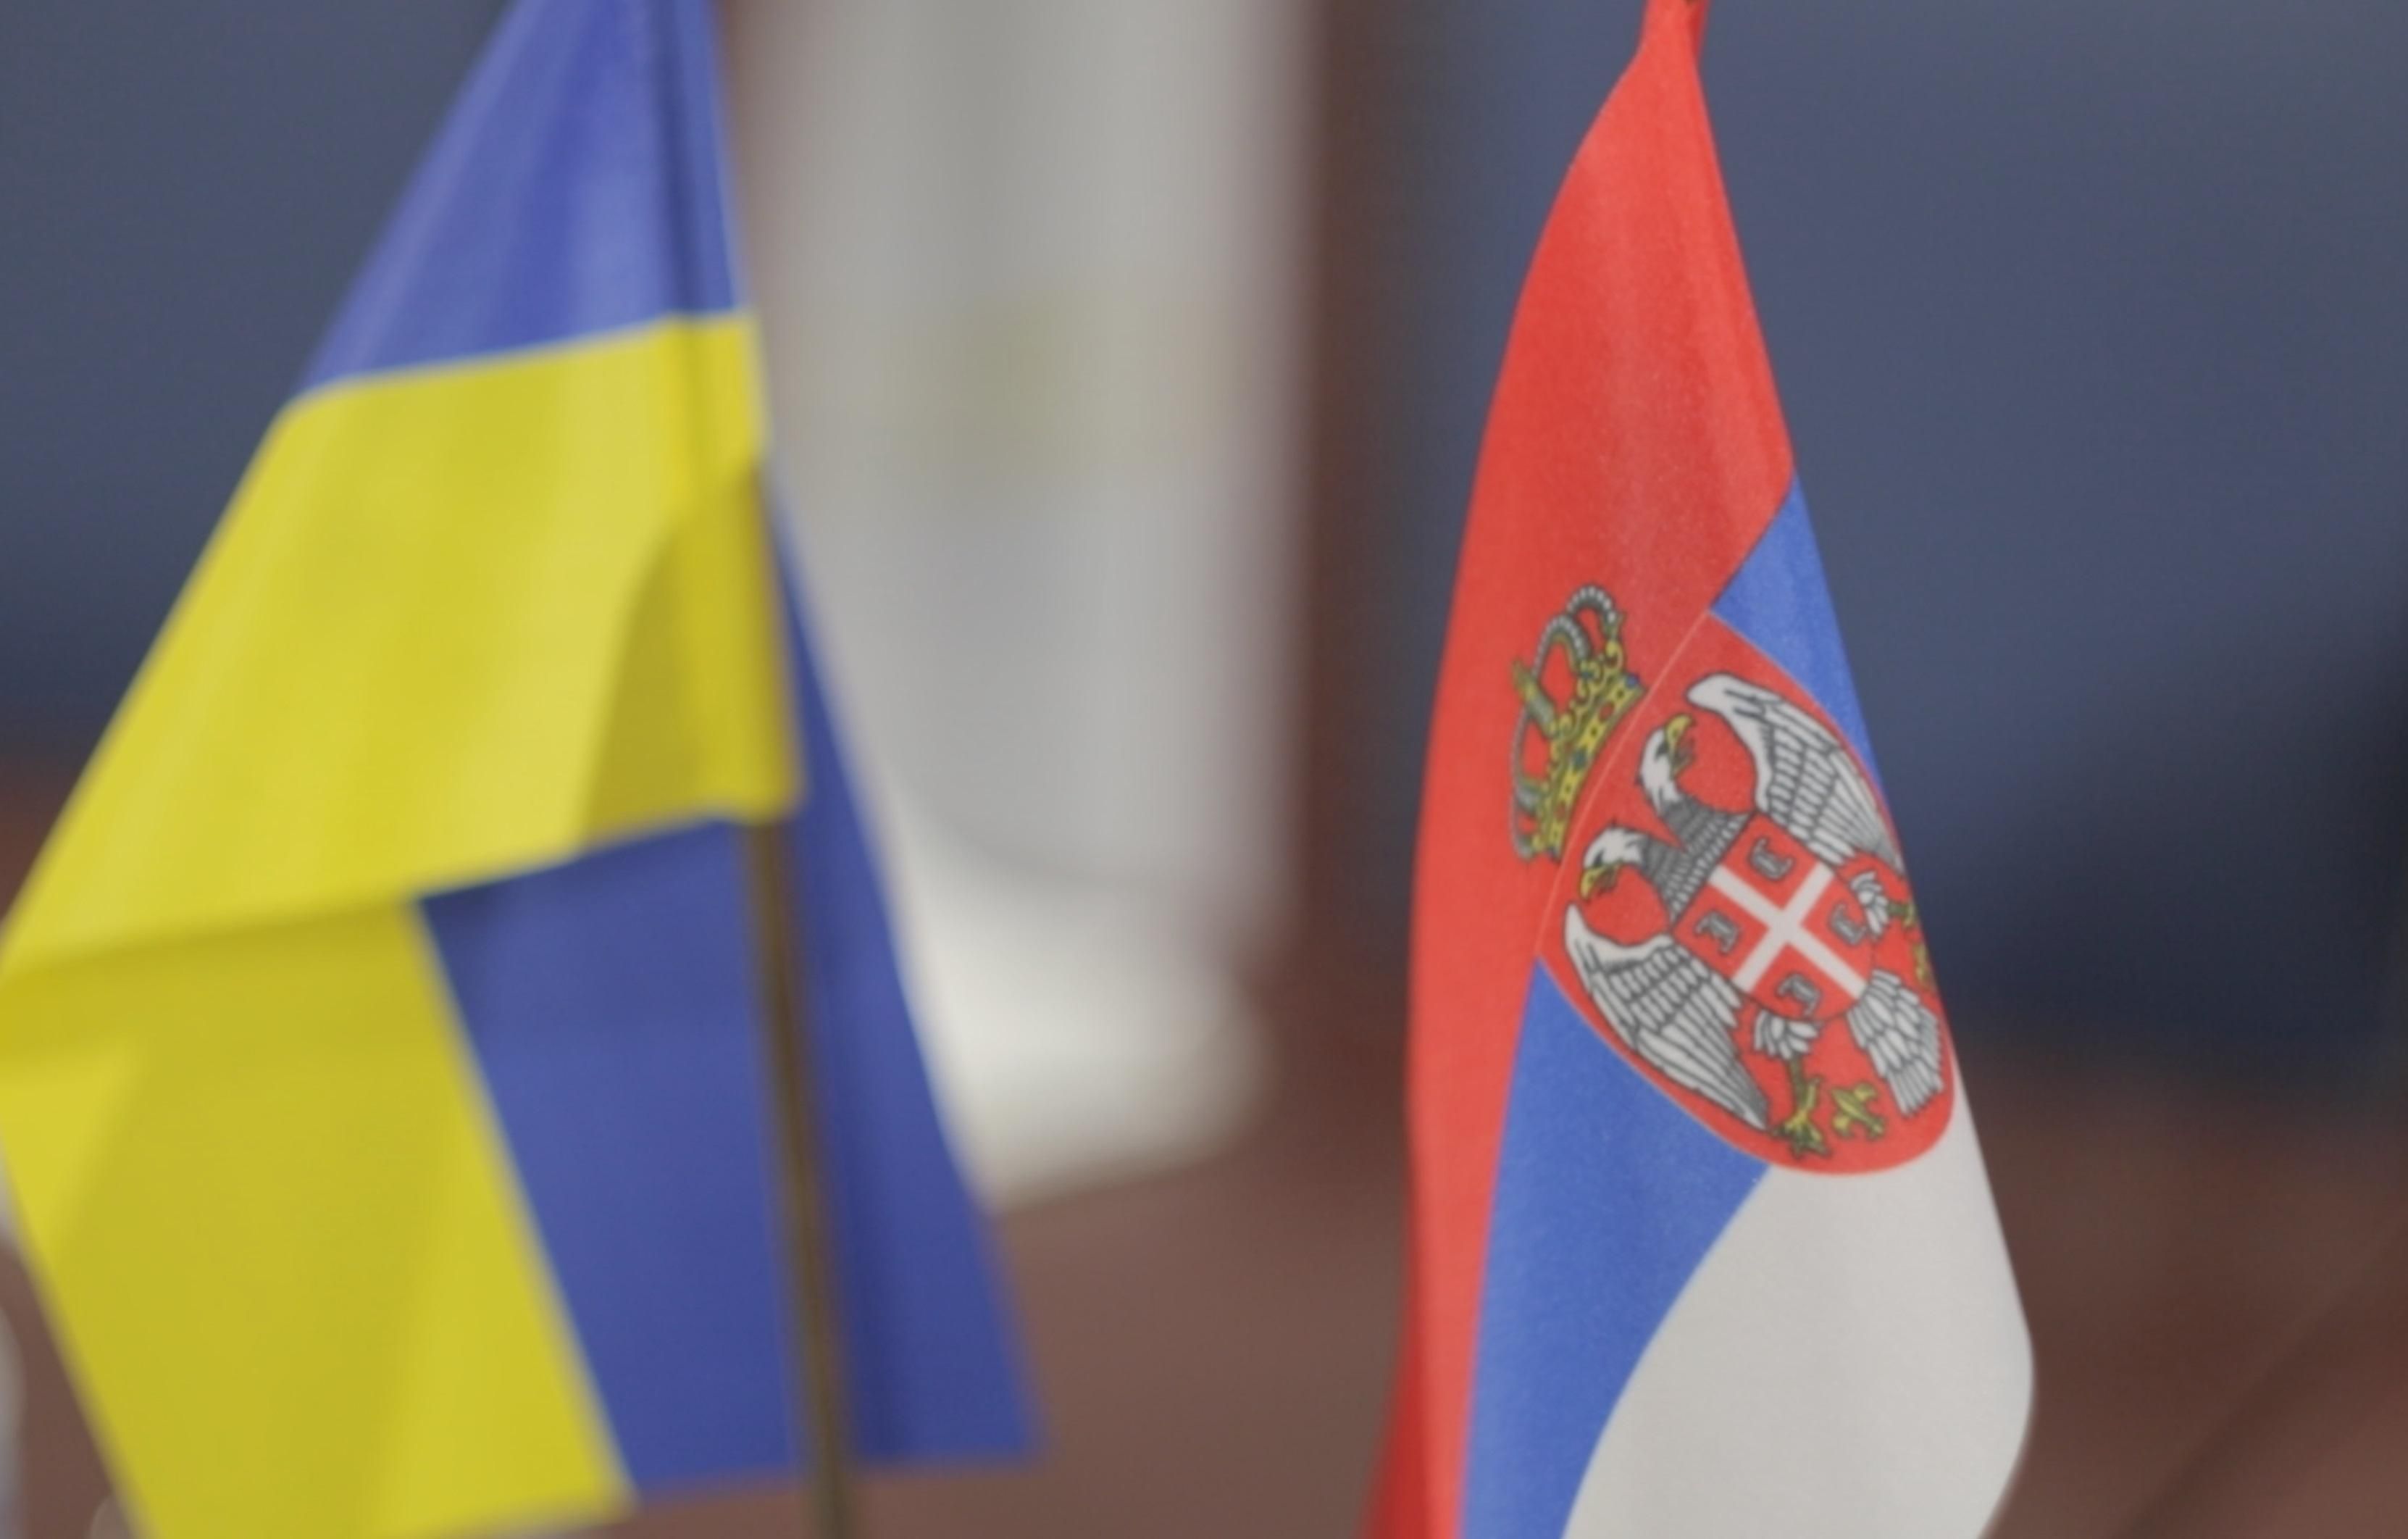 Сербия вызвала своего посла в Украине на ковер